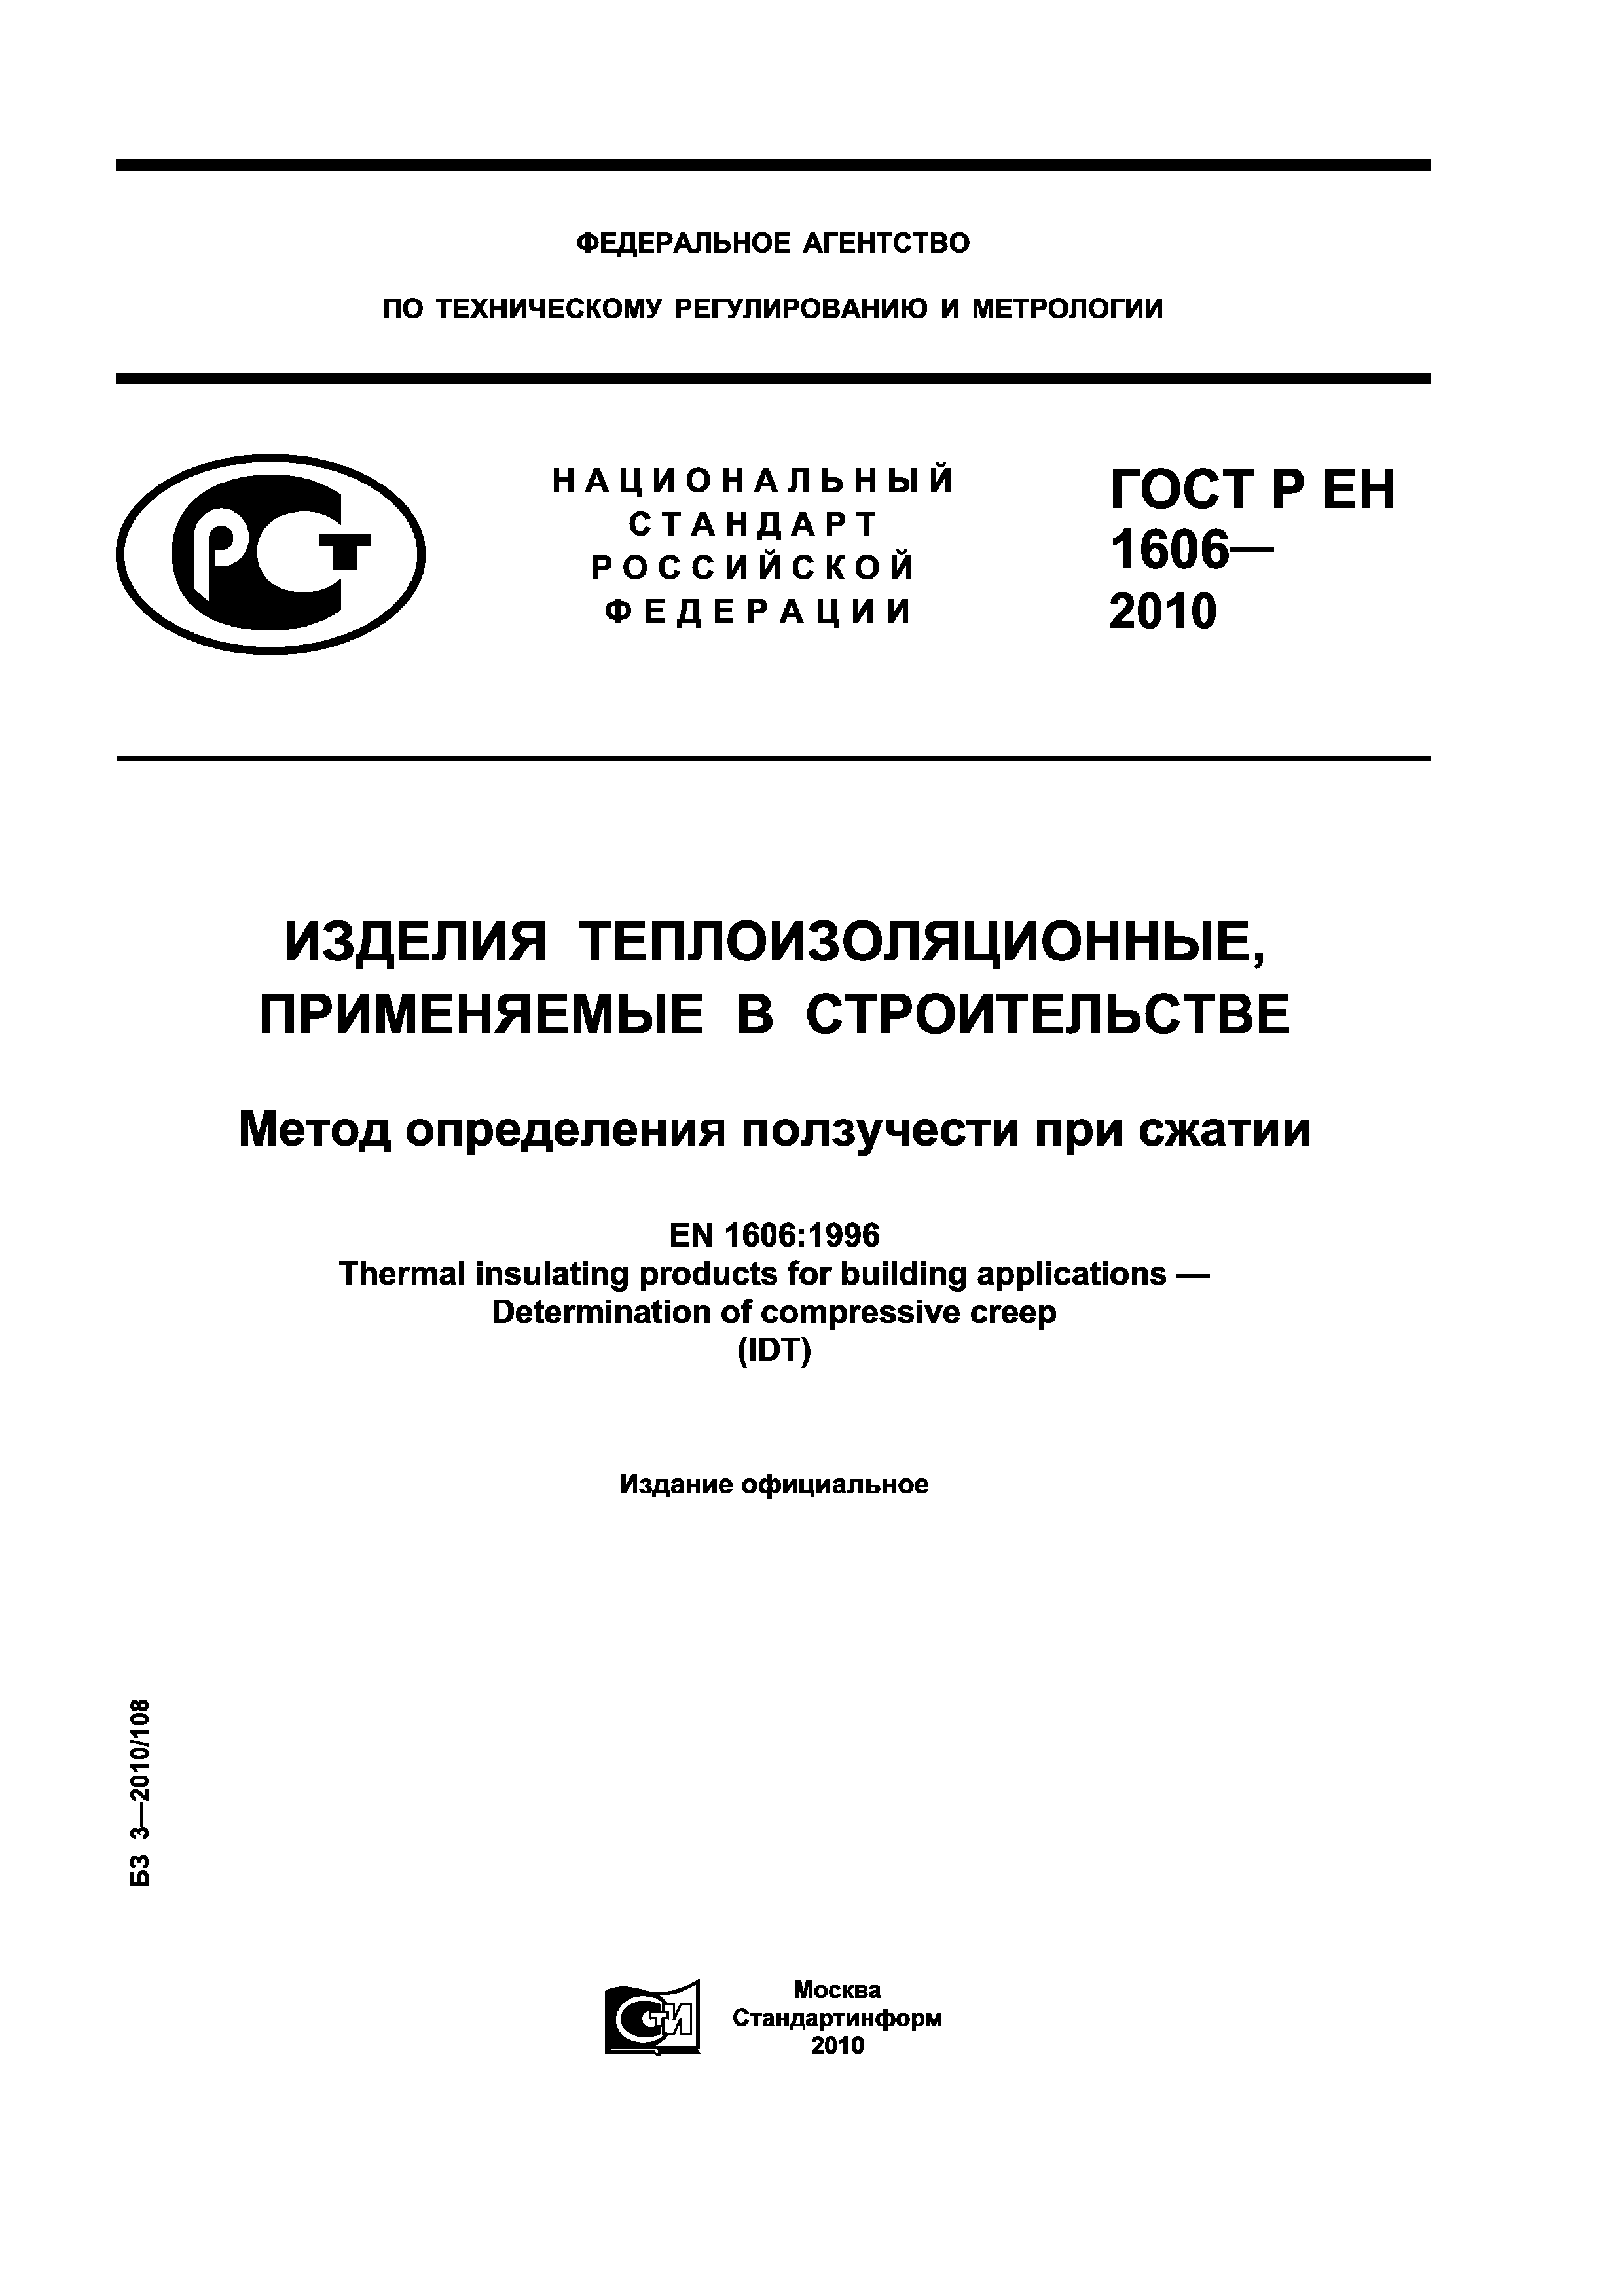 ГОСТ Р ЕН 1606-2010